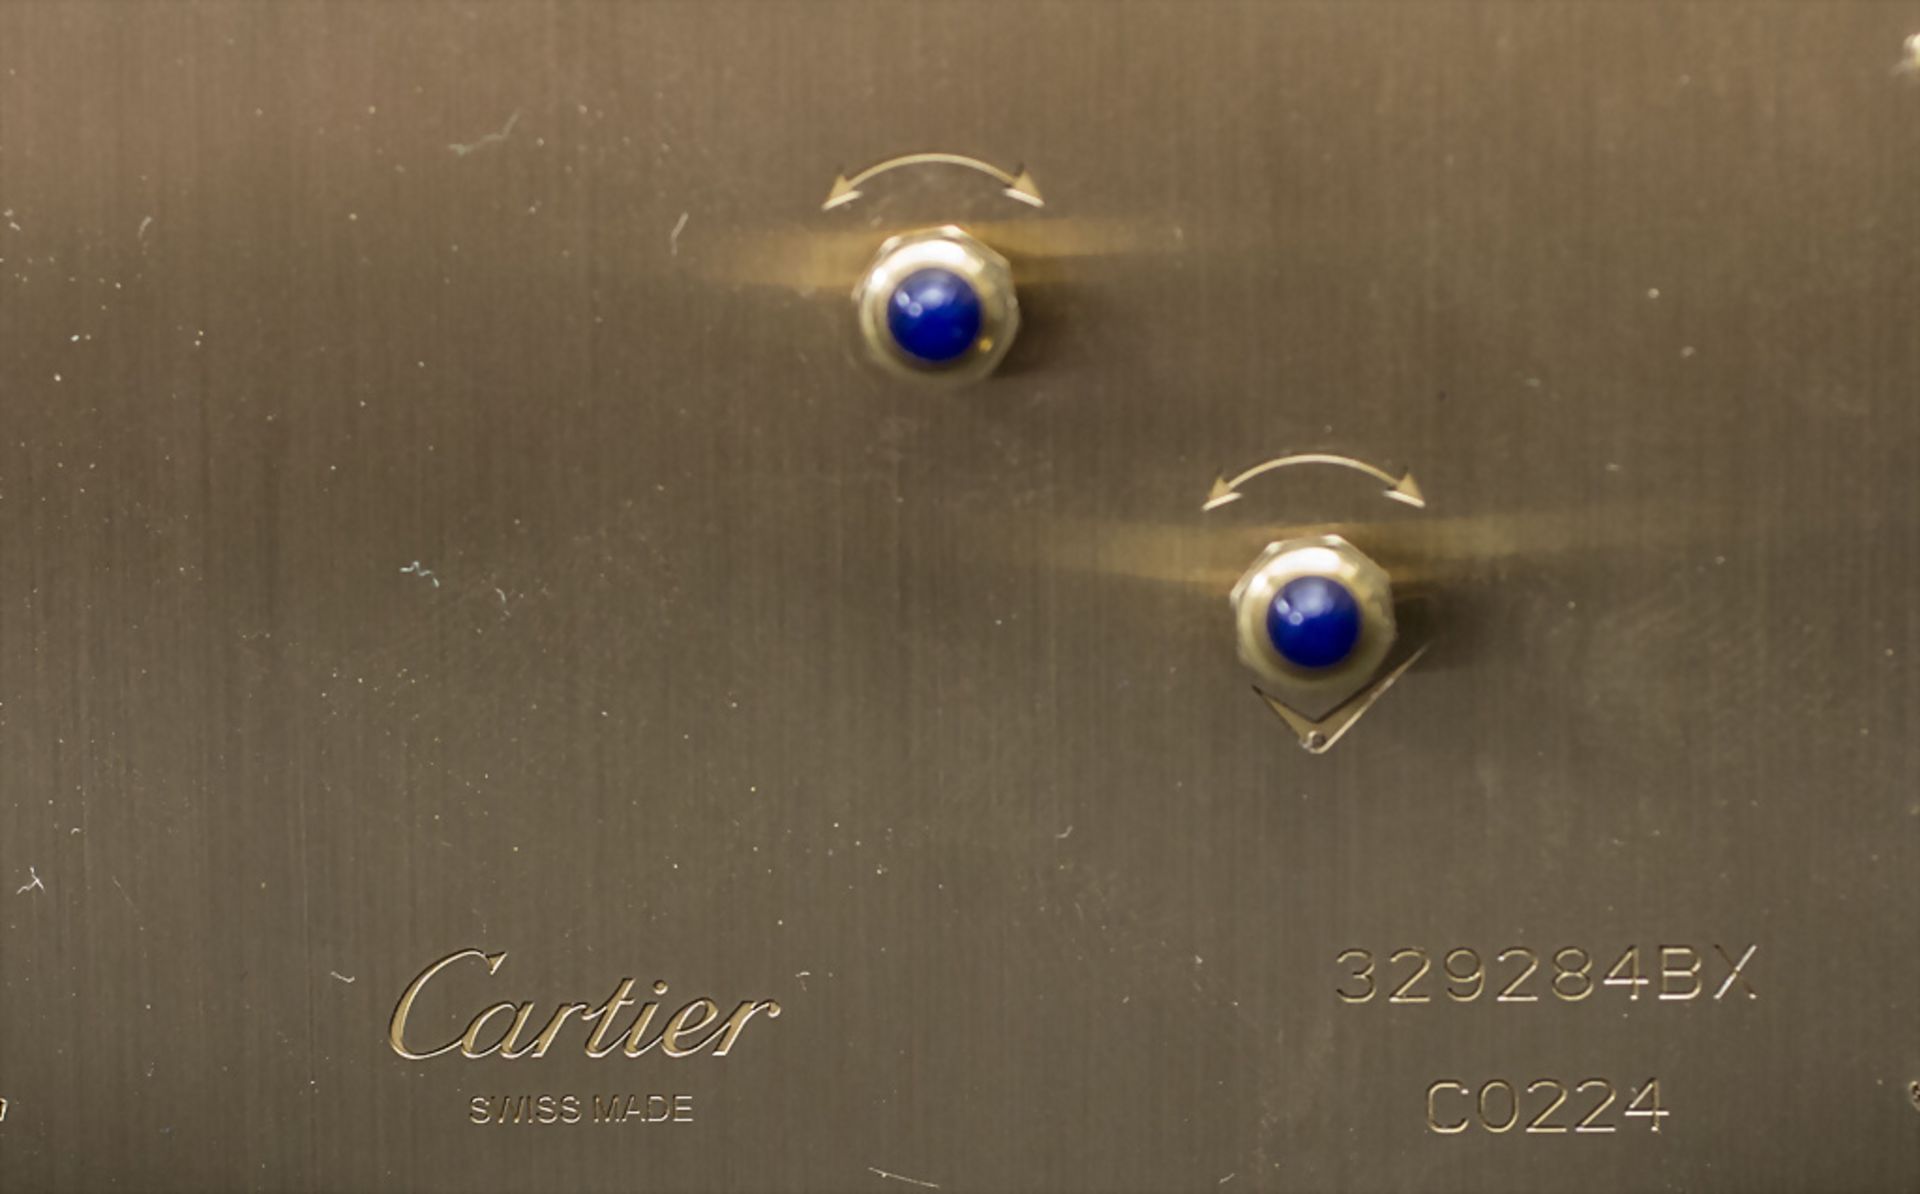 Art Déco Schreibtischuhr / An Art Deco desk clock with enamel, Cartier, Swiss Made, 20. Jh. - Image 7 of 7